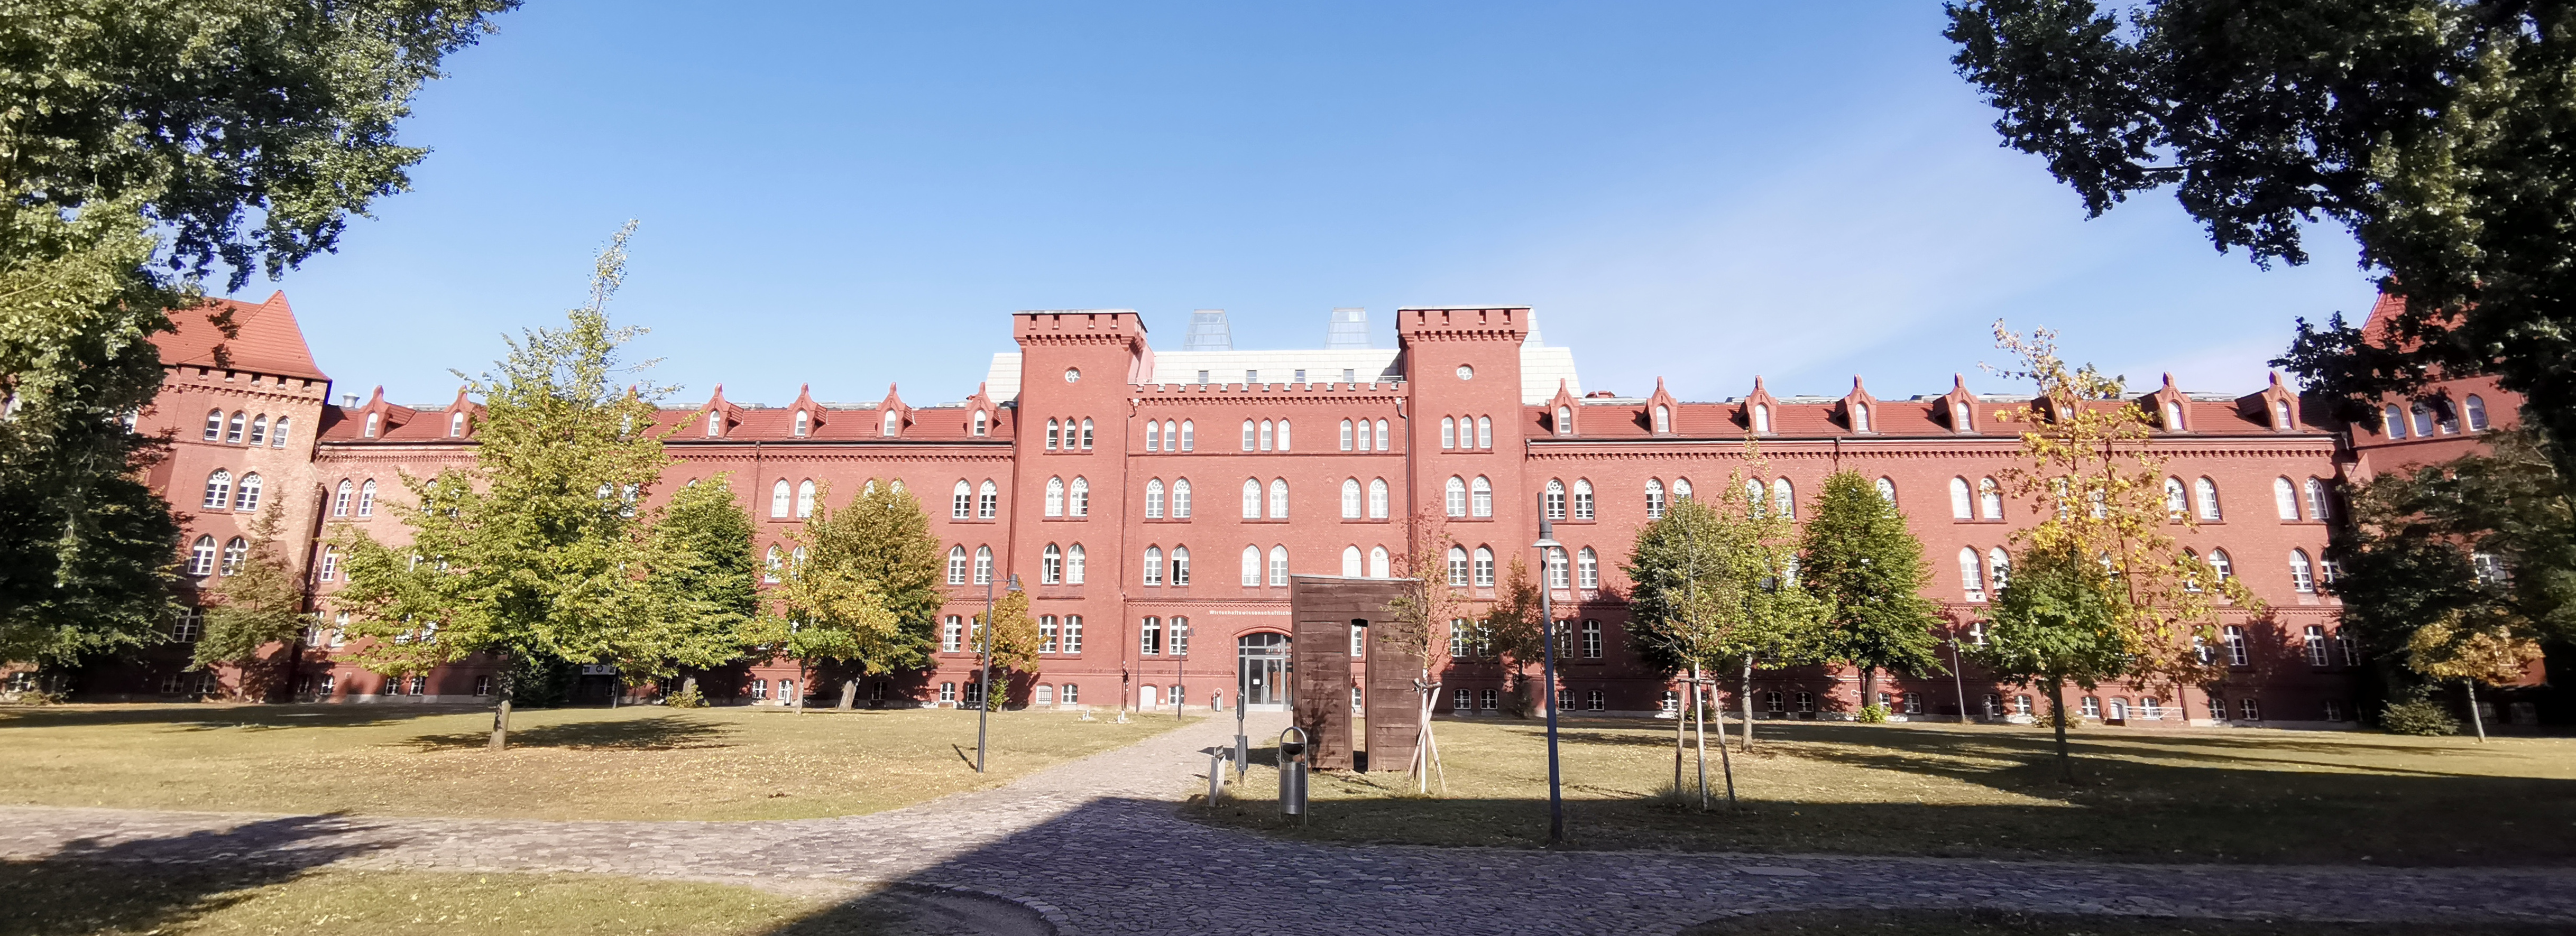 Abbildung: Campus der Technischen Hochschule Brandenburg (THB)